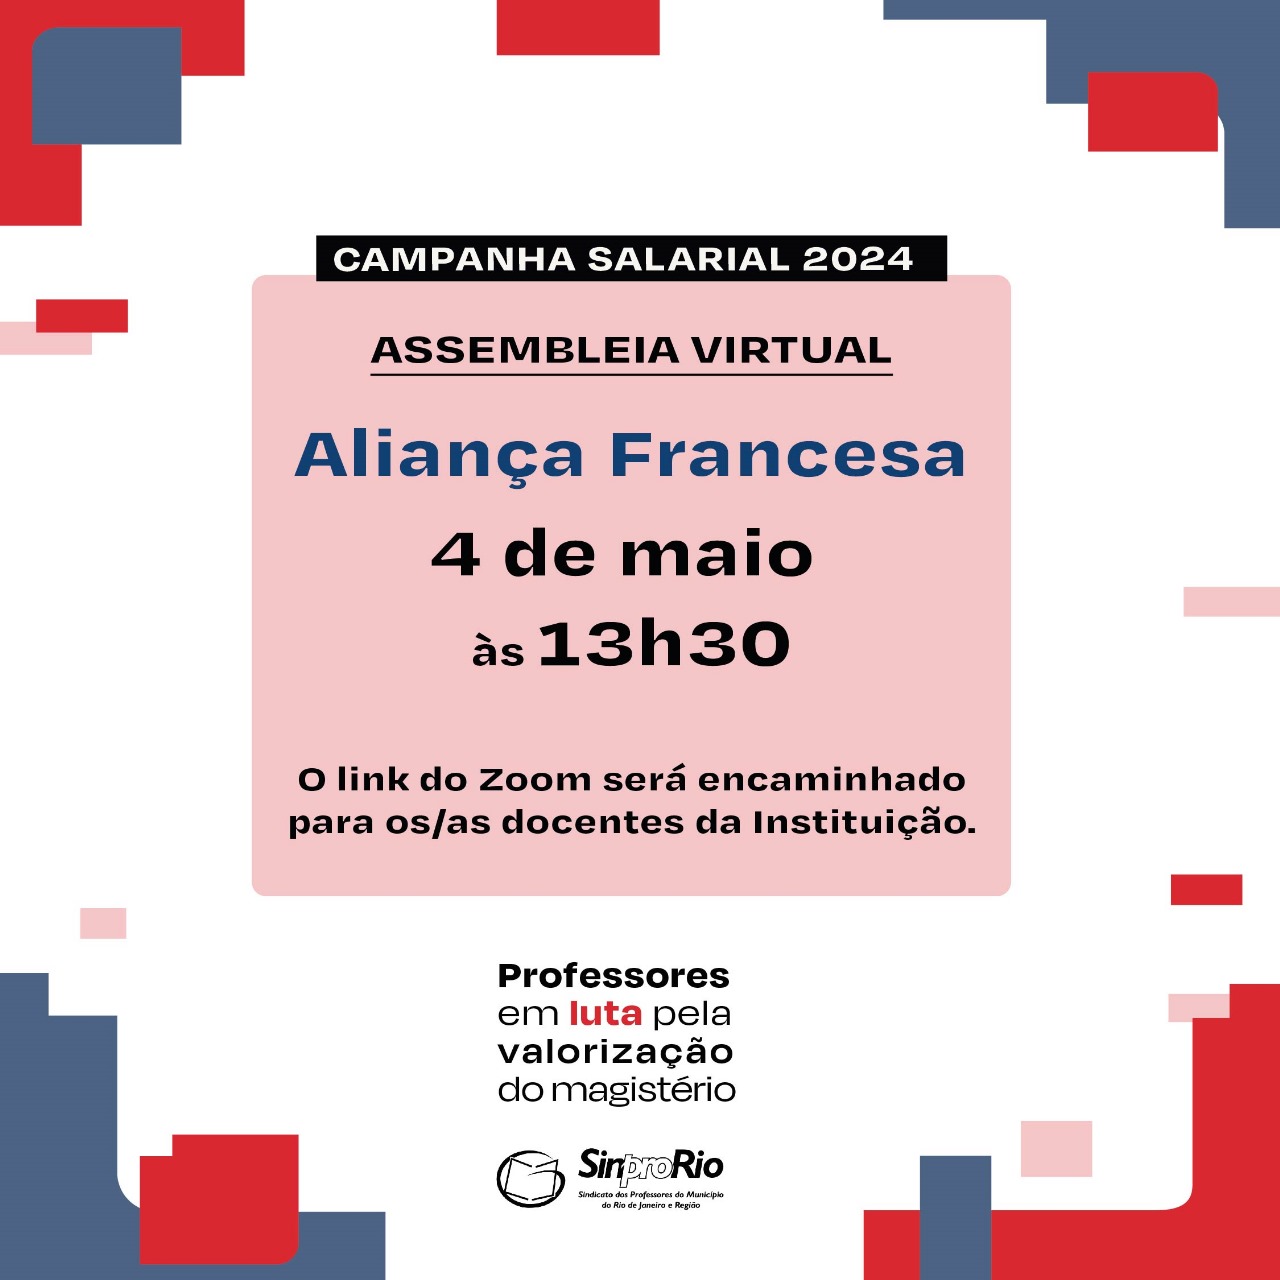 Camp. Salarial 2024 – Aliança Francesa: assembleia virtual 04/05, sábado, às 13h30!